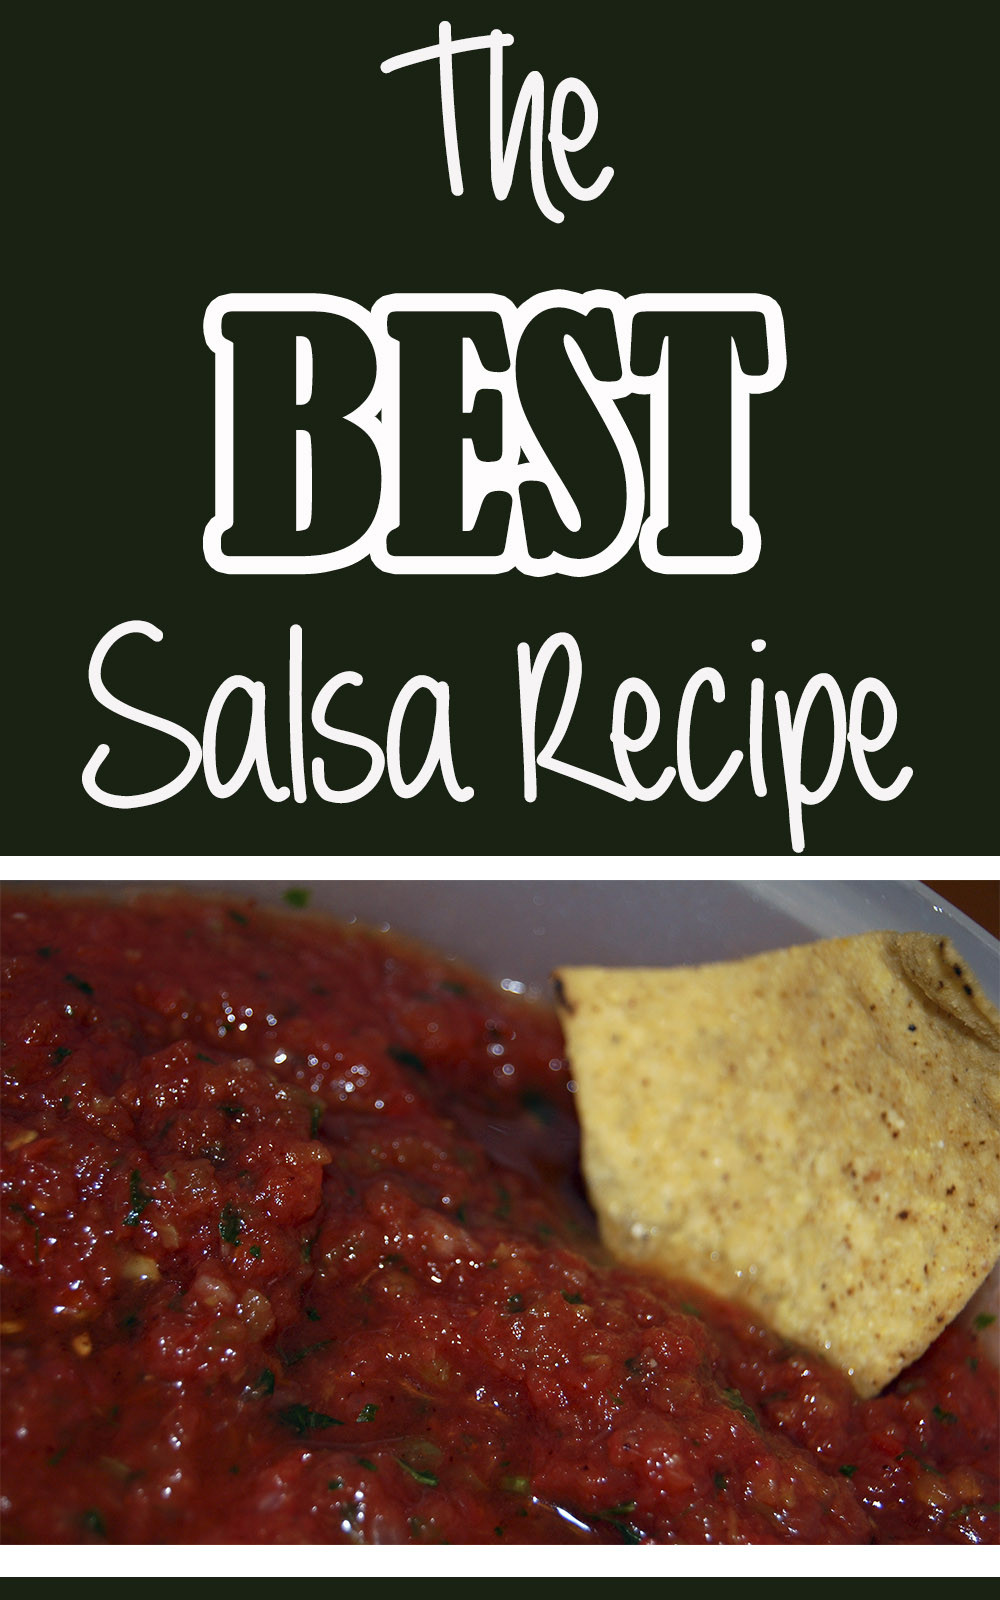 Best Salsa Recipe
 The BEST Salsa Recipe